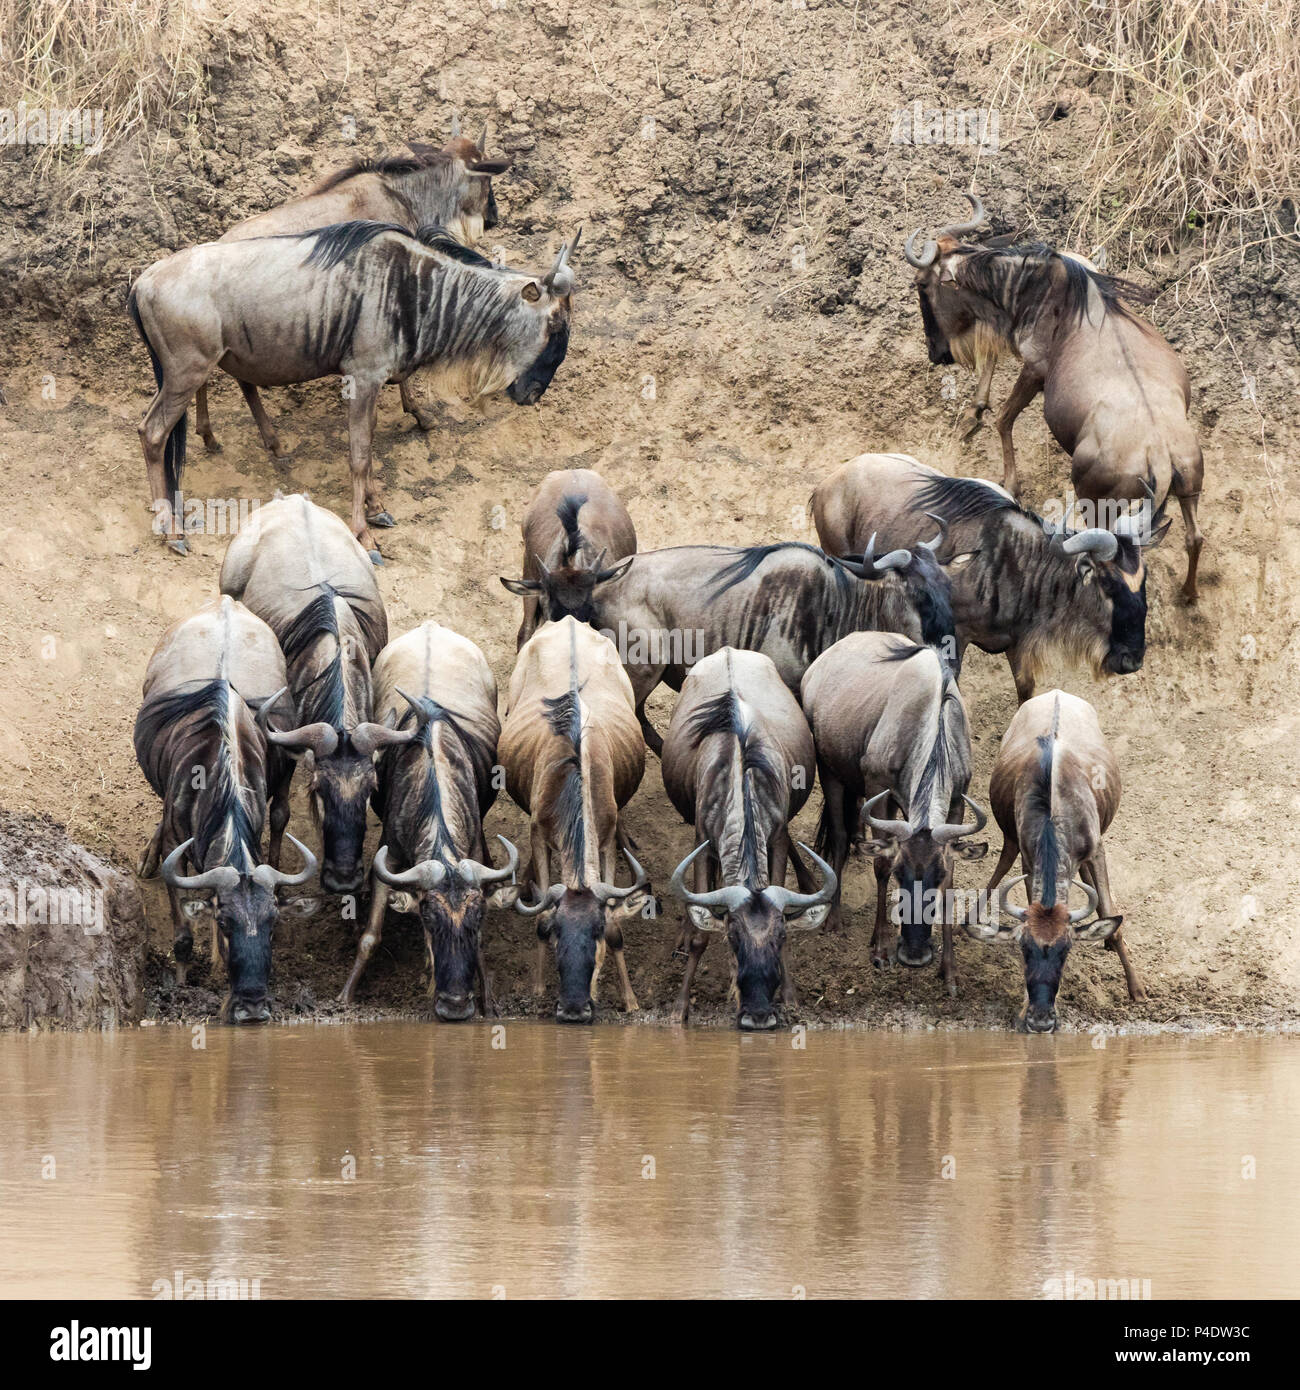 Una fila de ñus beber del río Mara durante la gran migración en Masai Mara, Kenya Foto de stock